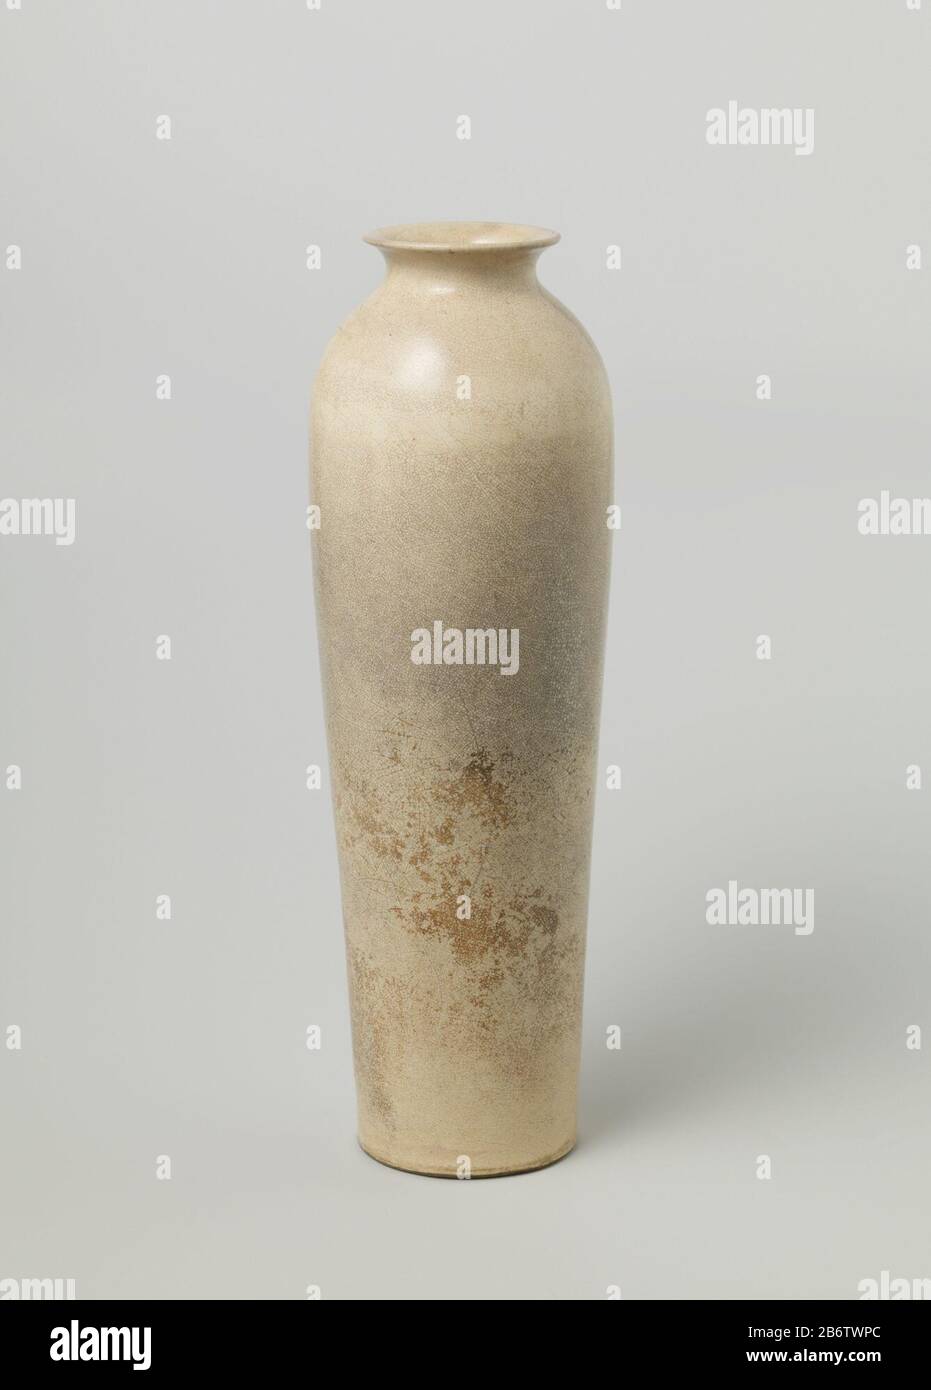 Hoge, slanke vaas van steengoed (Dong-khe-goed/Yiangnan Ding), met een cilindervormig lichaam, naar boven toe iets uitlopend, ronde schouder en spreidende nek met platte rand. Crèmekleurig, gecraqueleerd glazuur. Een chip in de voetring. Monochromen. Manufacturer : pottenbakker: anoniemPlaats manufacture: China Dating: ca. 1700 - ca. 1799School / stijl: Qing-dynastie (1644-1912) / Kangxi-periode (1662-1722) / Yongzheng-periode (1723-1735) / Qianlong-periode (1736-1795) / Jiaqing-periode (1796-1820) Physical kenmerken: steengoed met een crèmekleurig glazuur Material: steengoed glazuur Techniek: Stock Photo